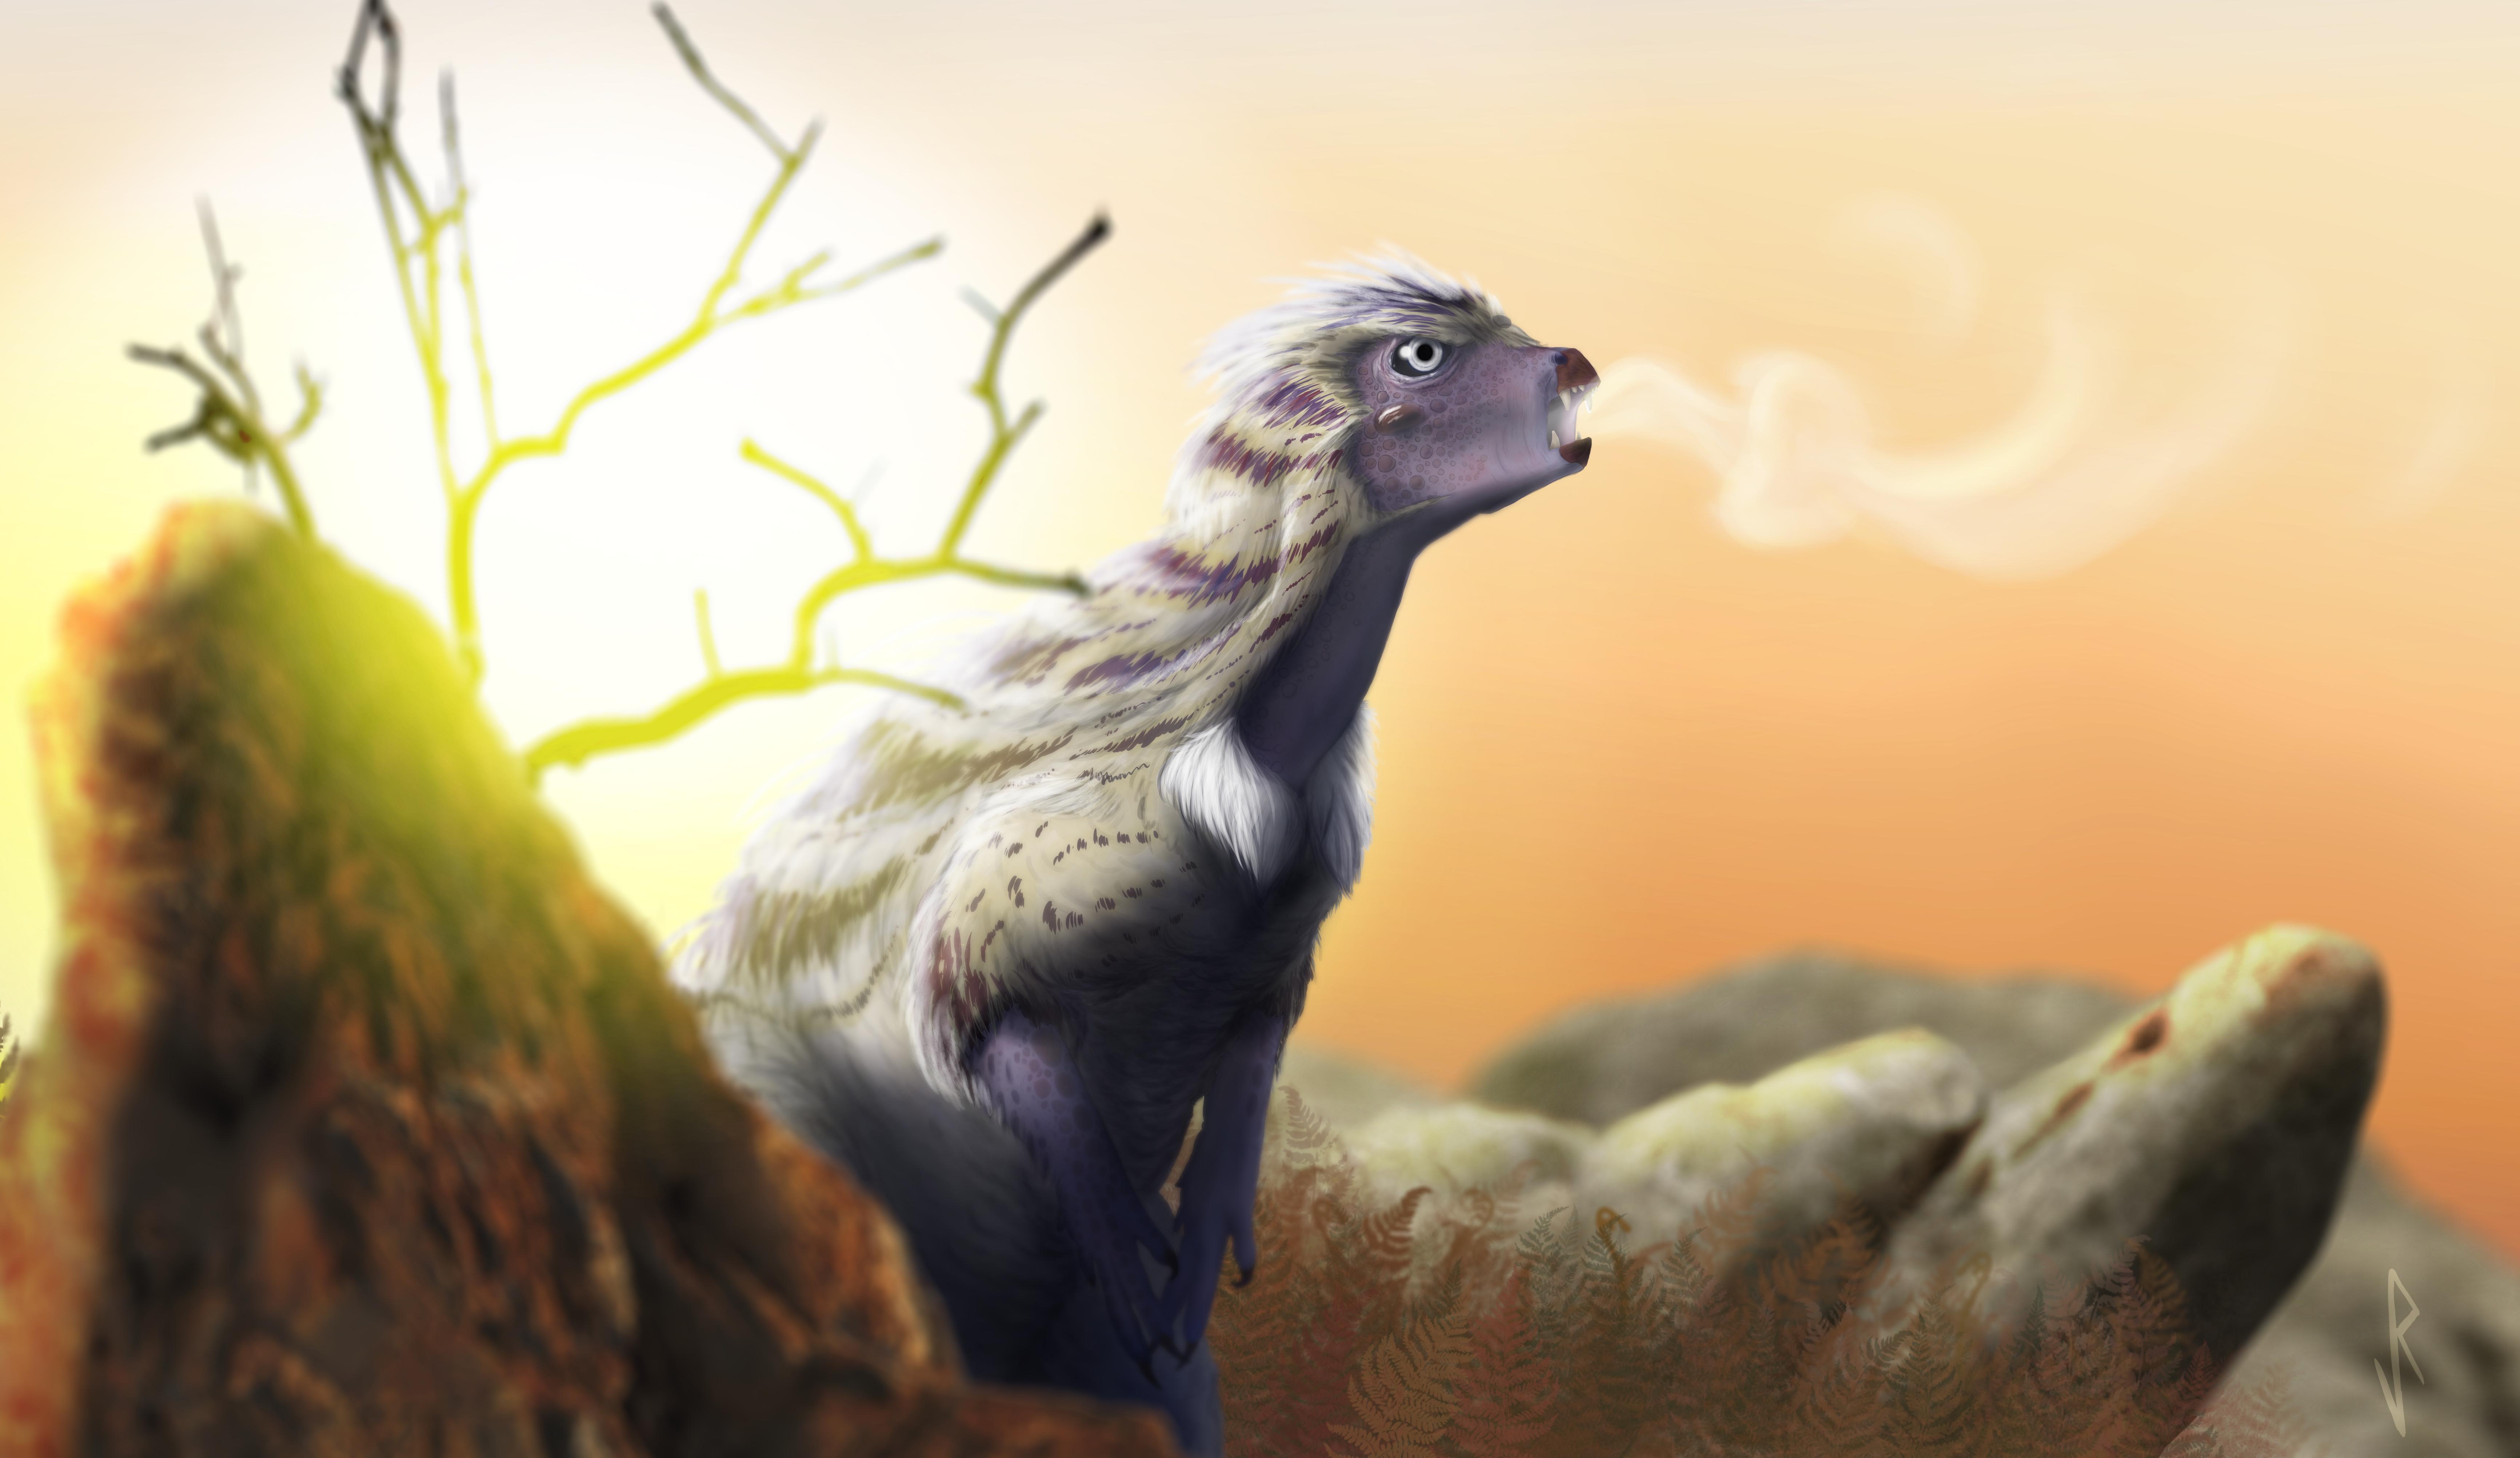 Палеонтологи выяснили, что динозавры могли дышать по-разному